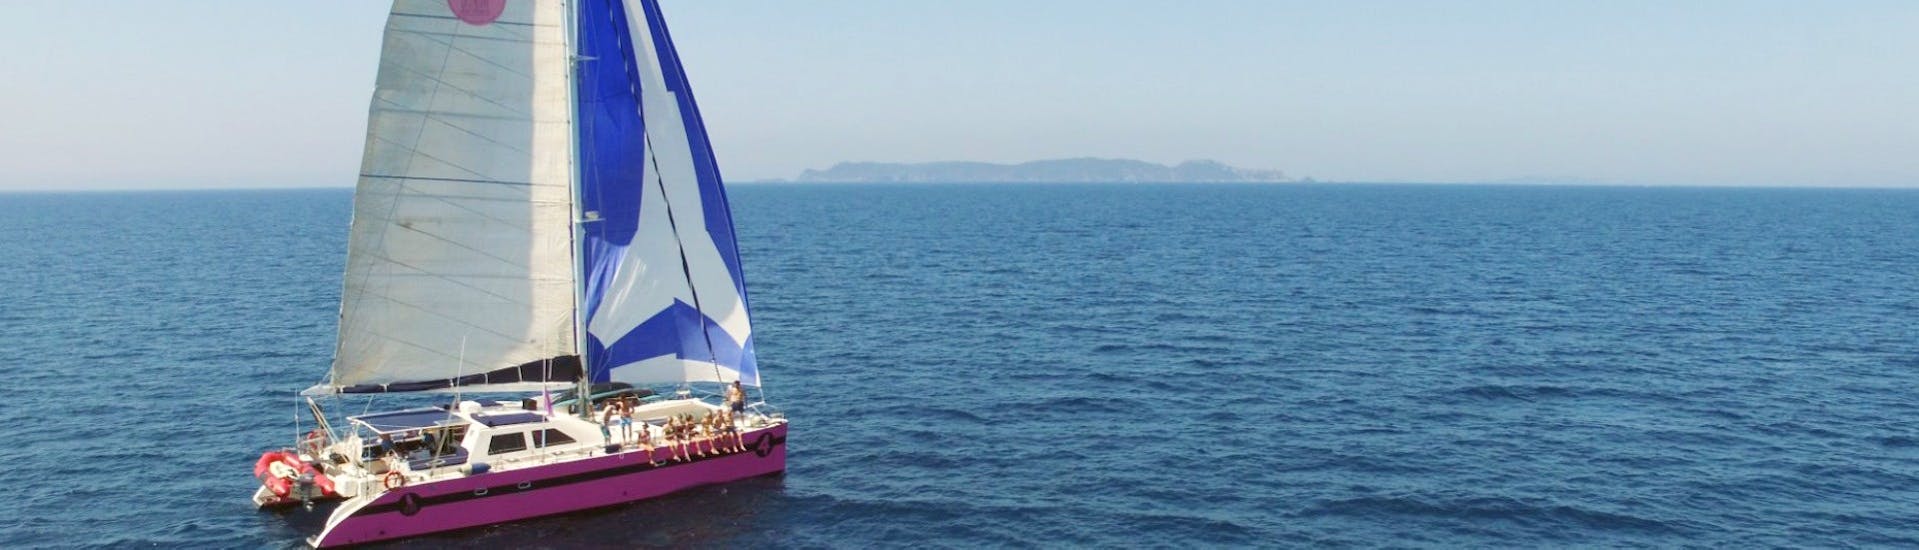 Blick auf den Golf von Saint-Tropez während der Katamaranfahrt ab Sainte-Maxime mit dem Caseneuve Maxi Katamaran.